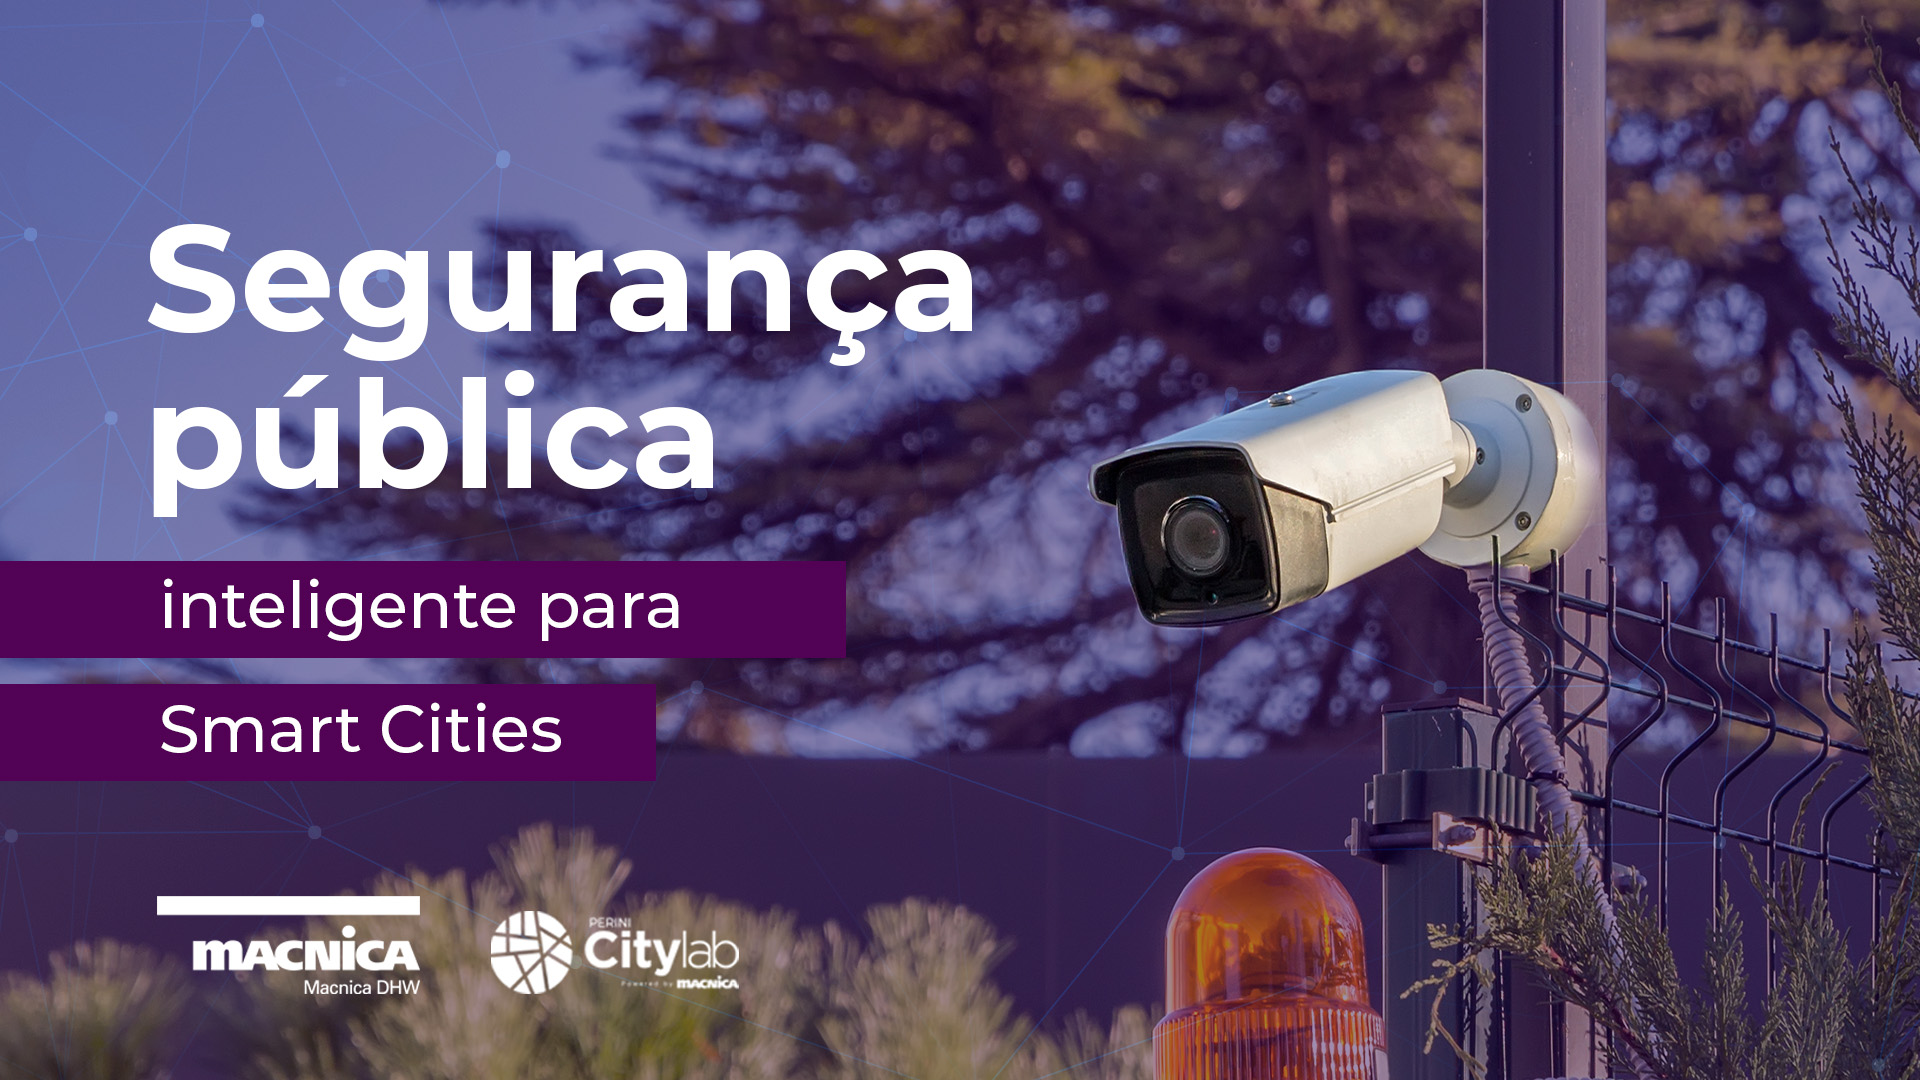 Segurança pública inteligente para Smart Cities